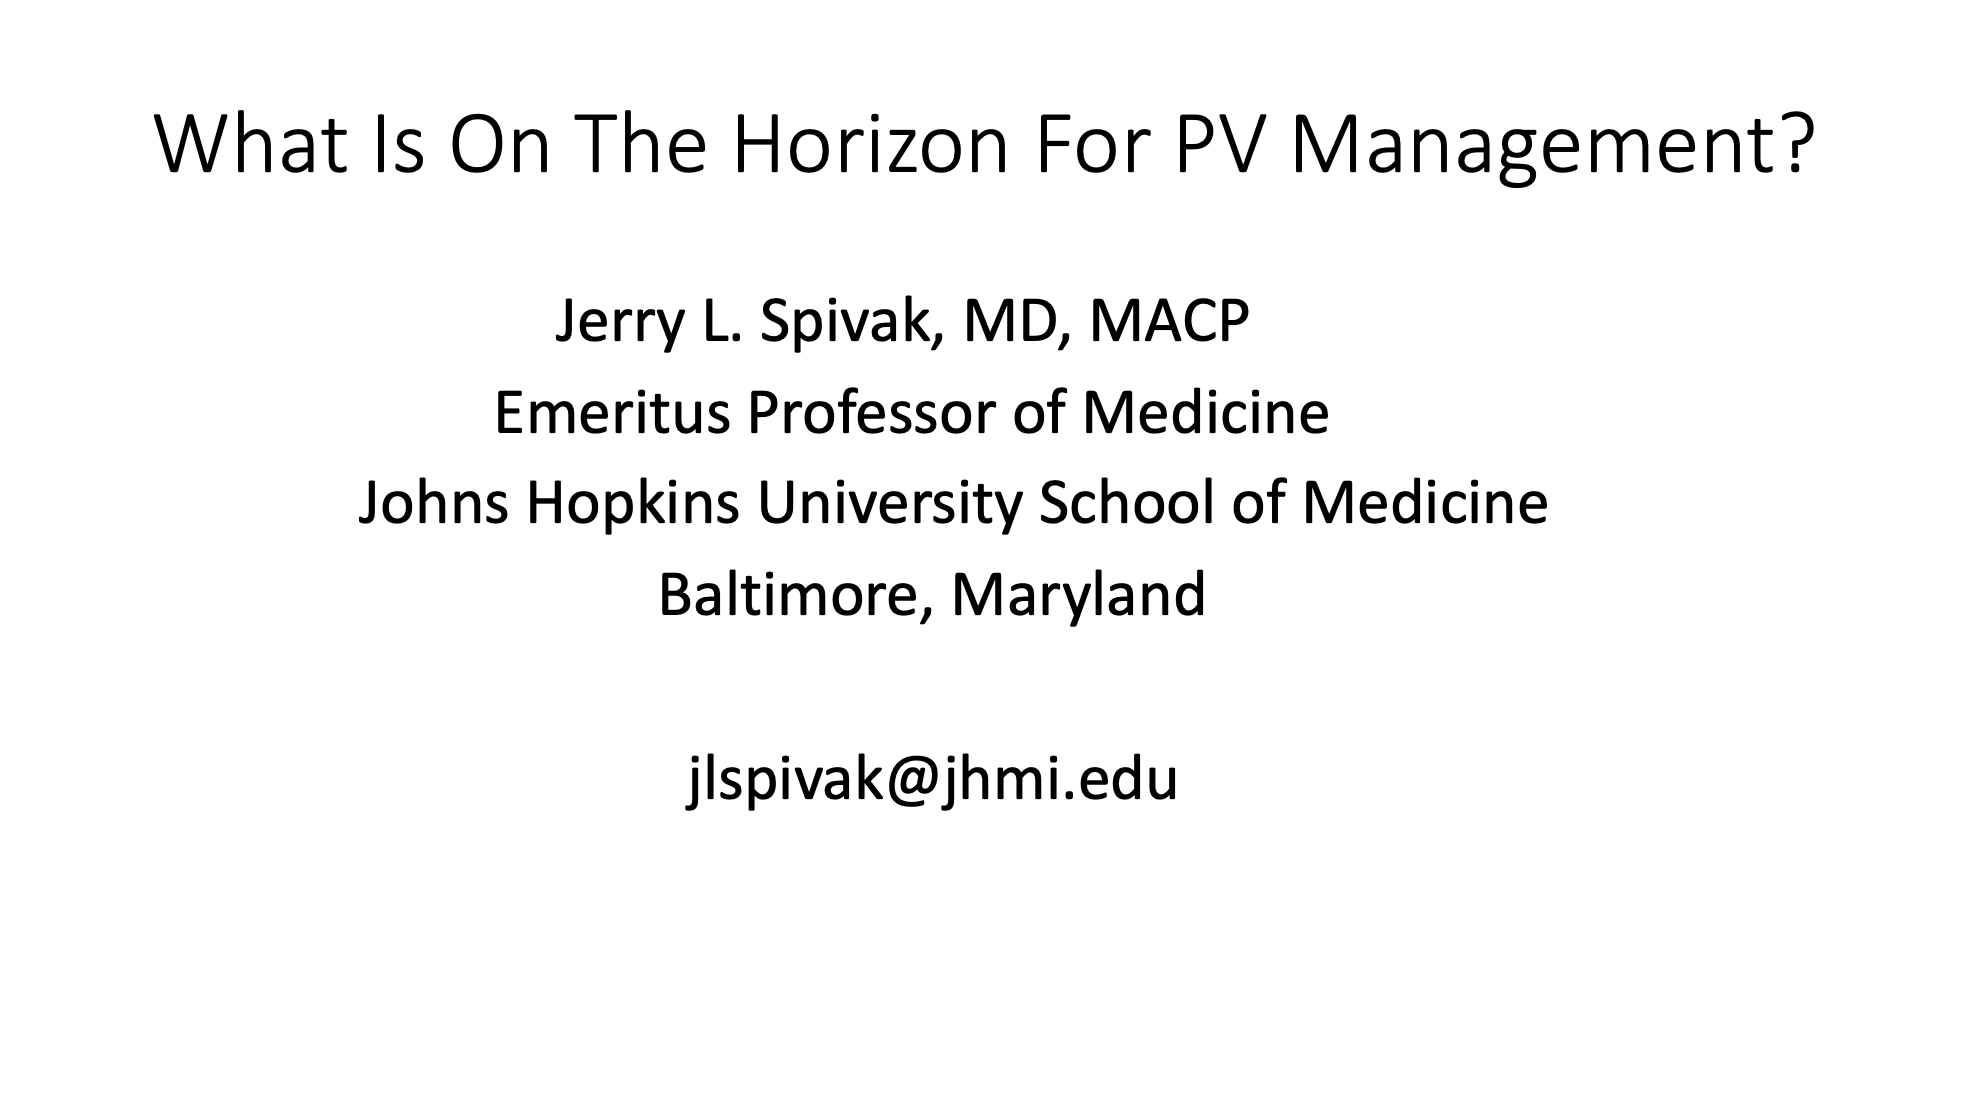 Dr. Jerry Spivak